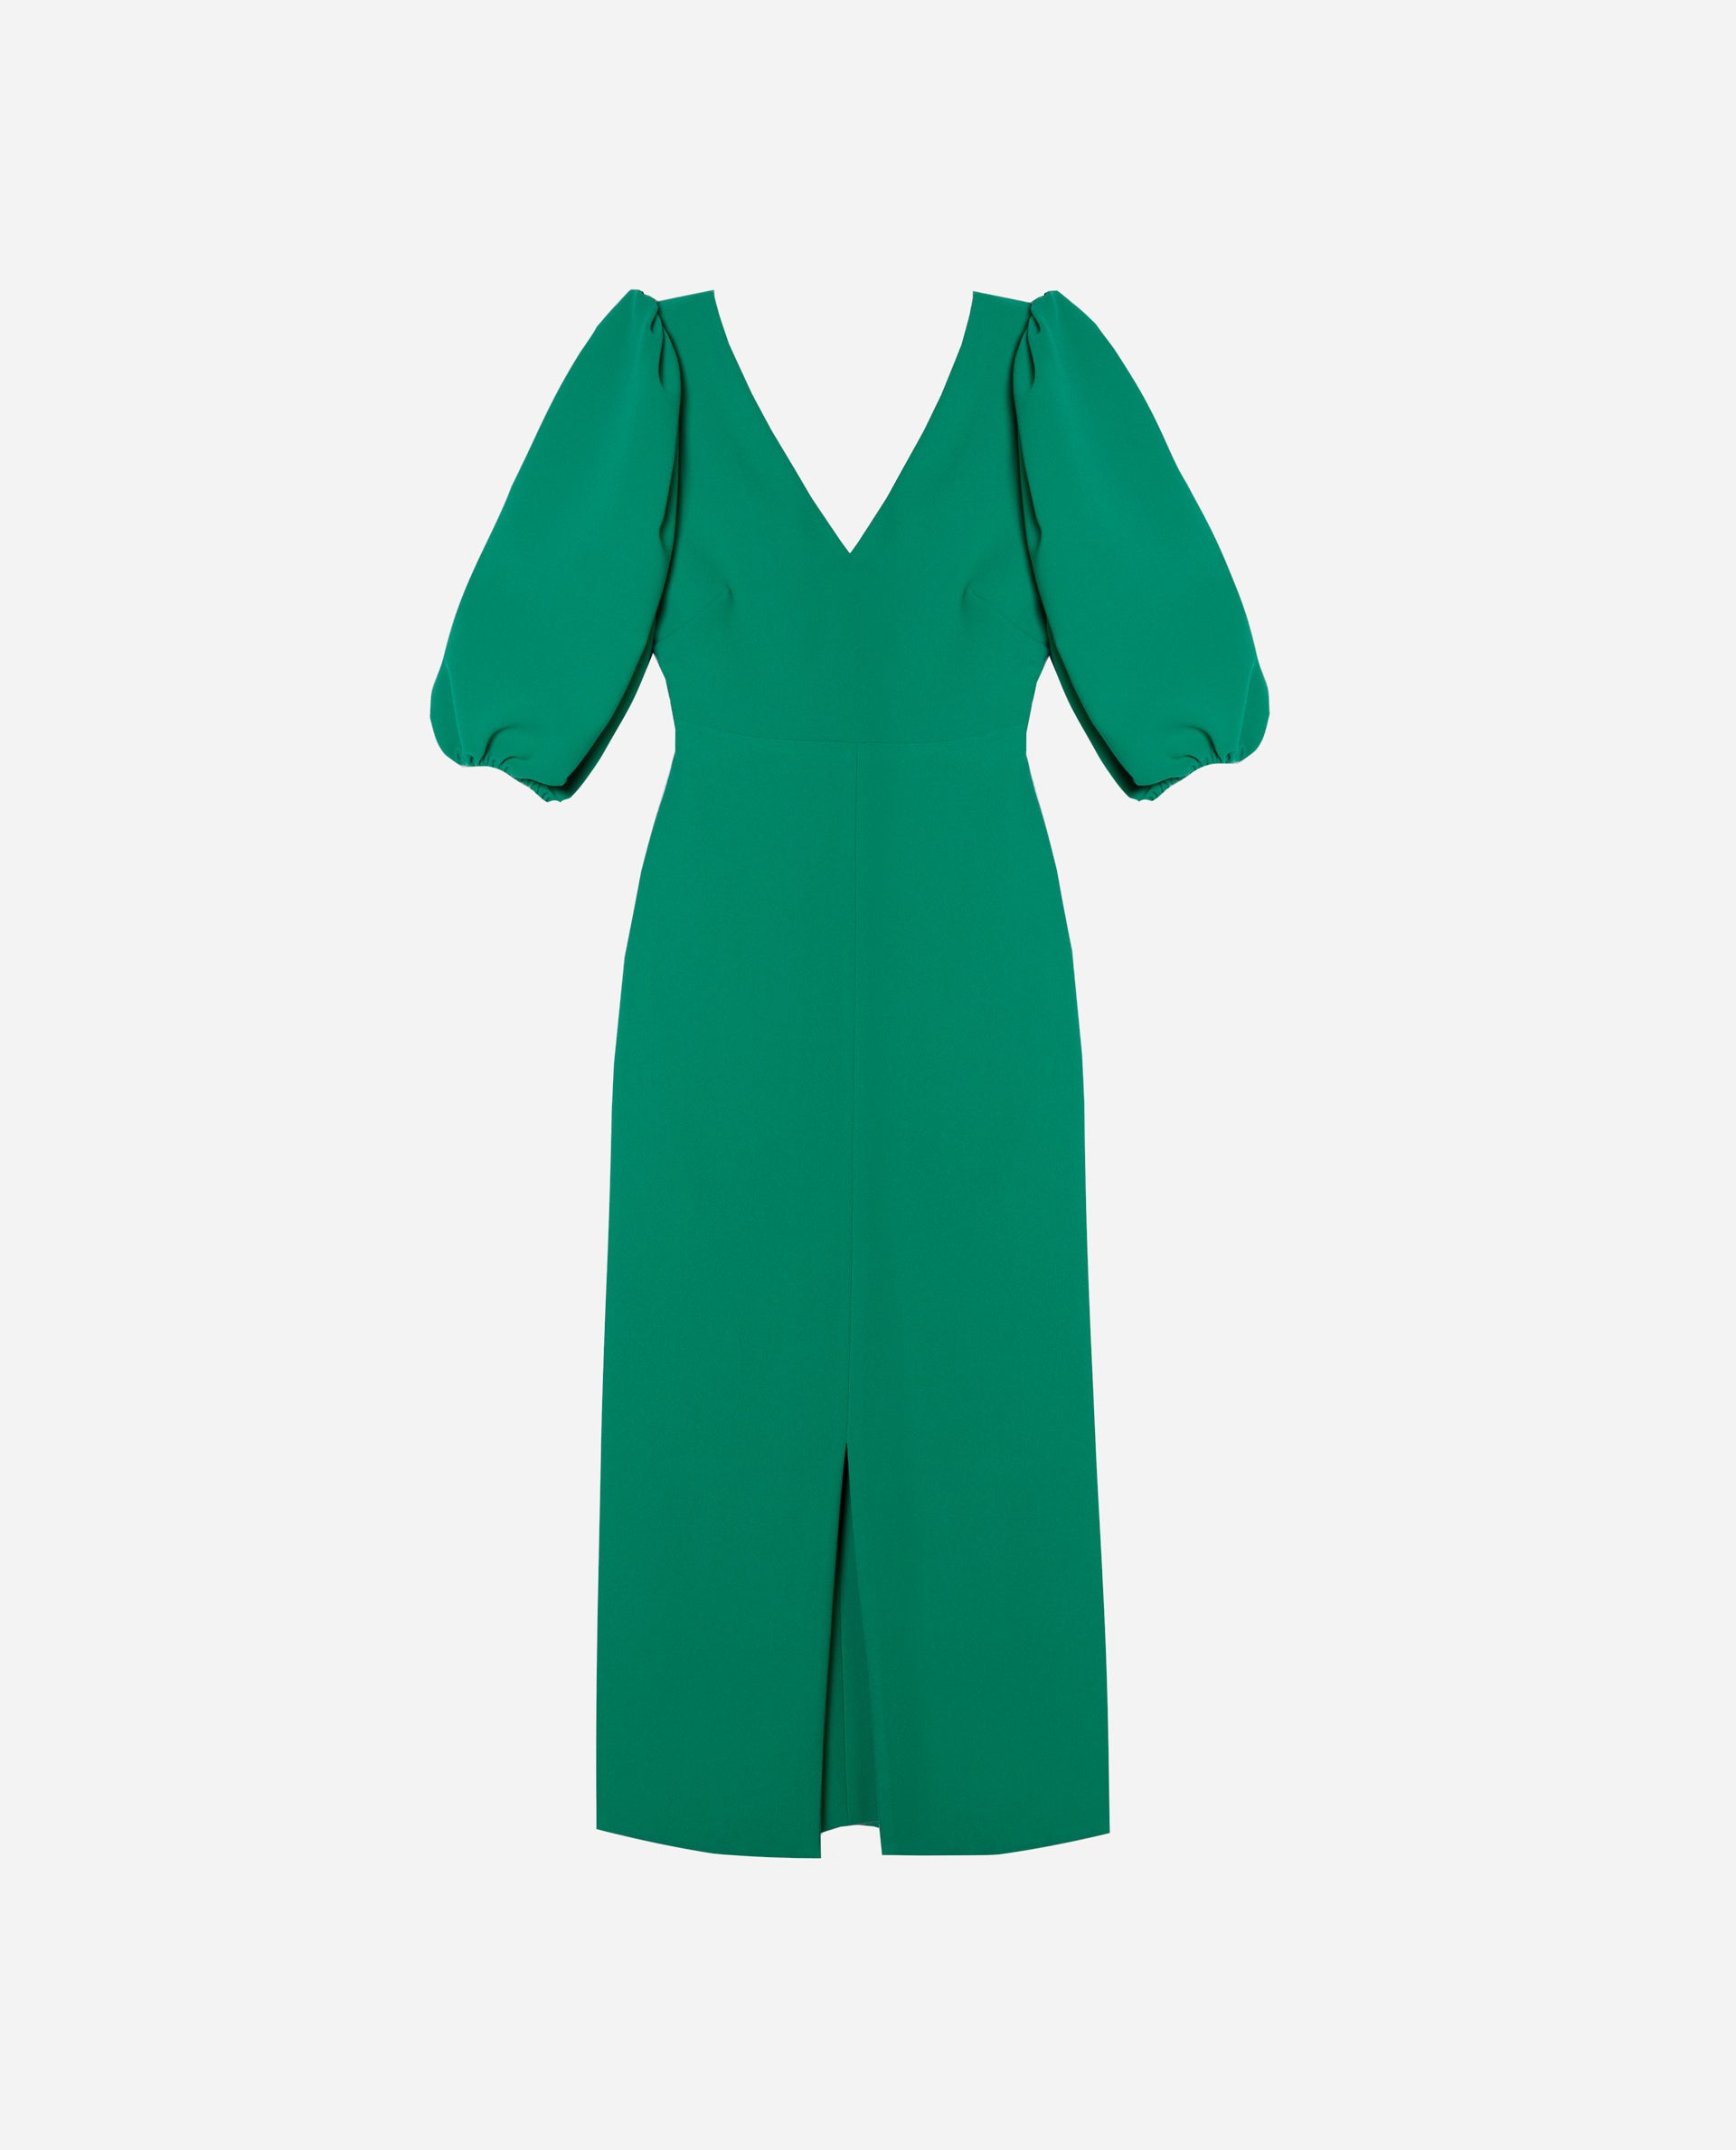 VESTIDO MRS. RHODES | Vestido Midi Verde Escote en Pico | Colección Invitadas THE-ARE